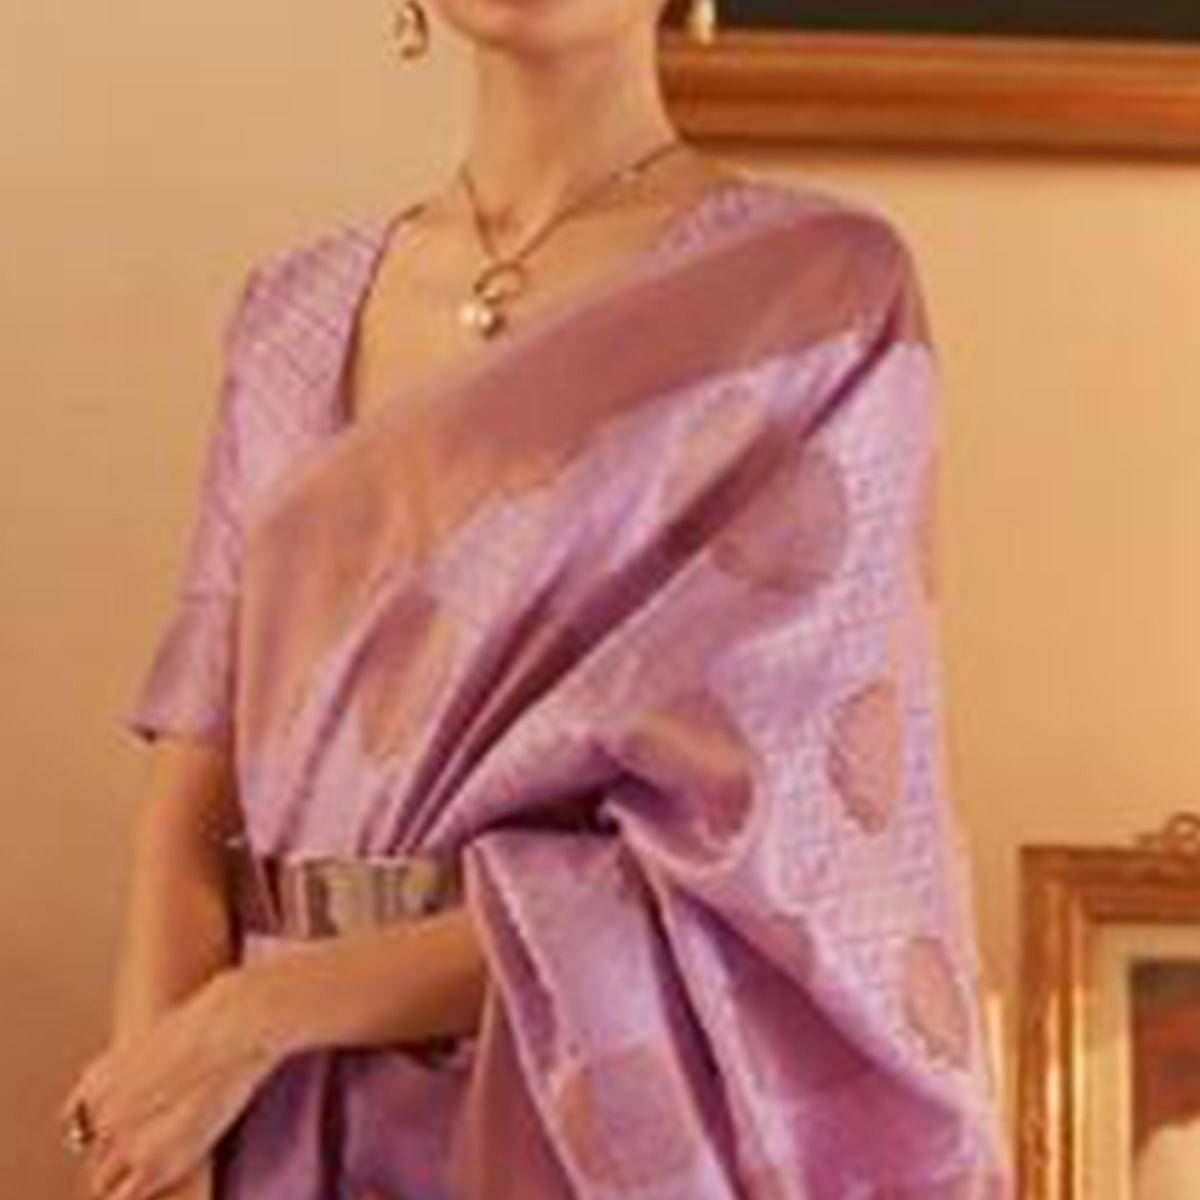 Purple Festive Wear Woven Silk Saree - Peachmode